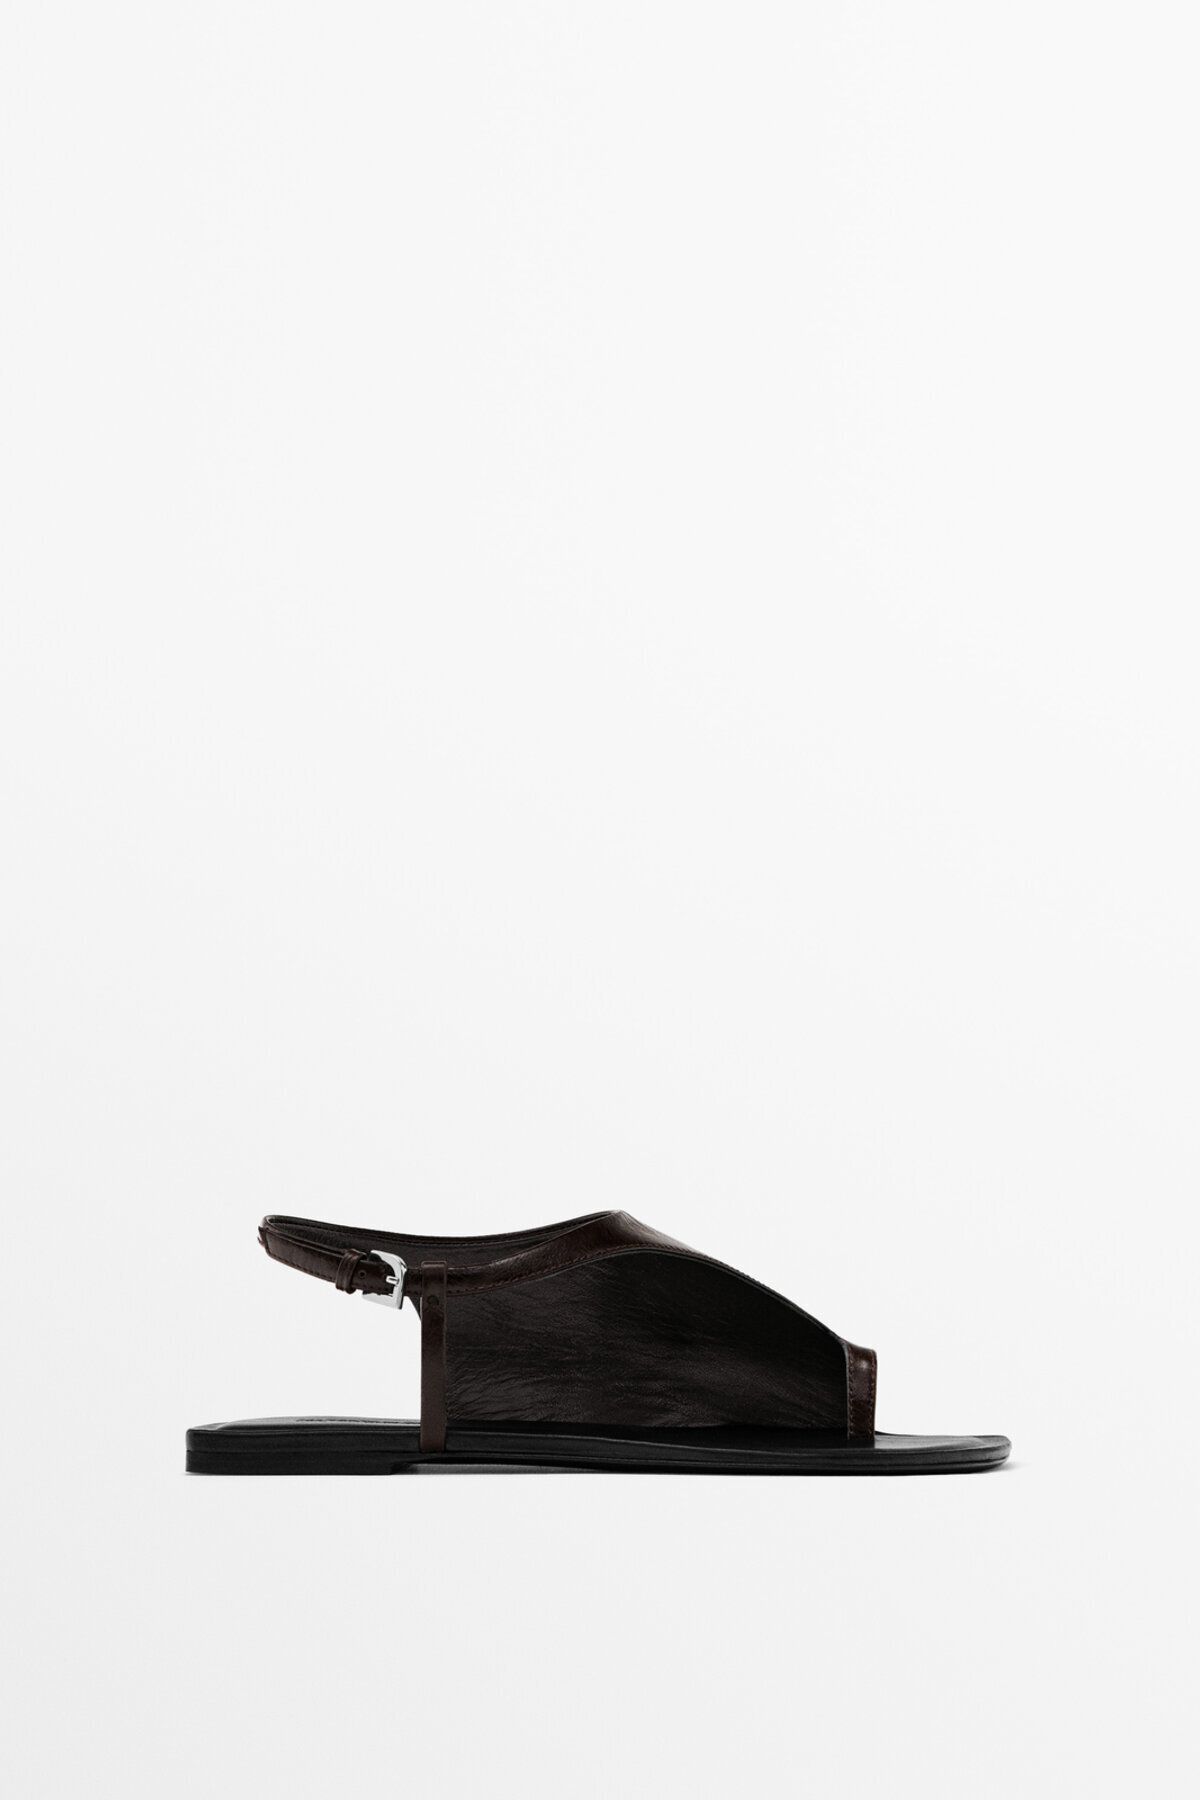 Massimo Dutti Limited Edition - Asimetrik tasarımlı düz sandalet